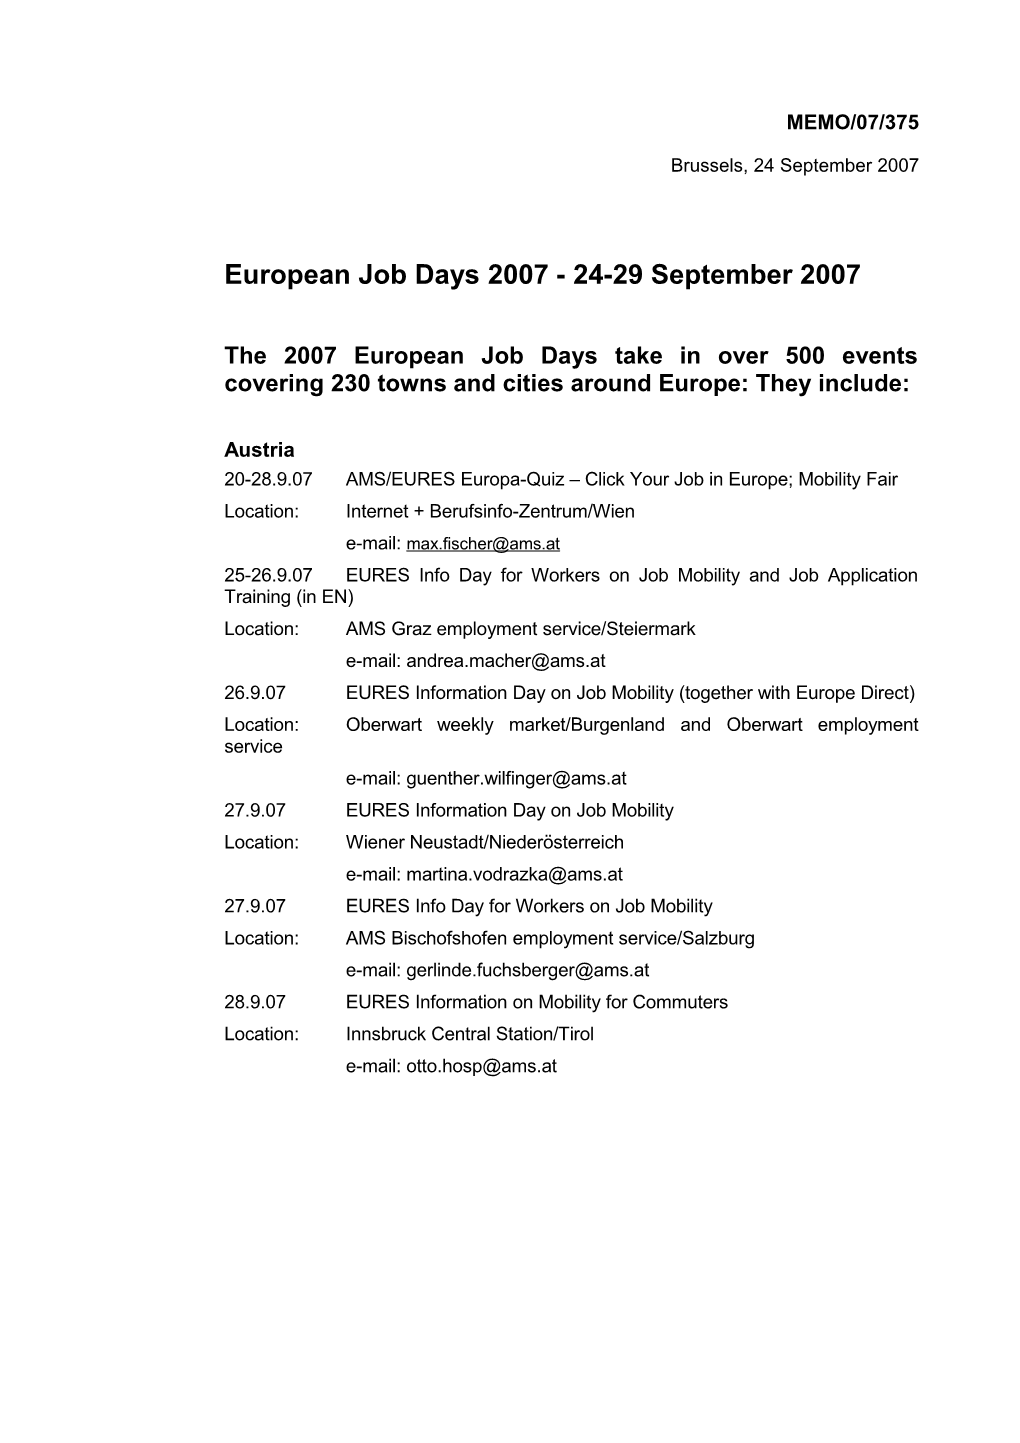 European Job Days 2007 - 24-29 September 2007